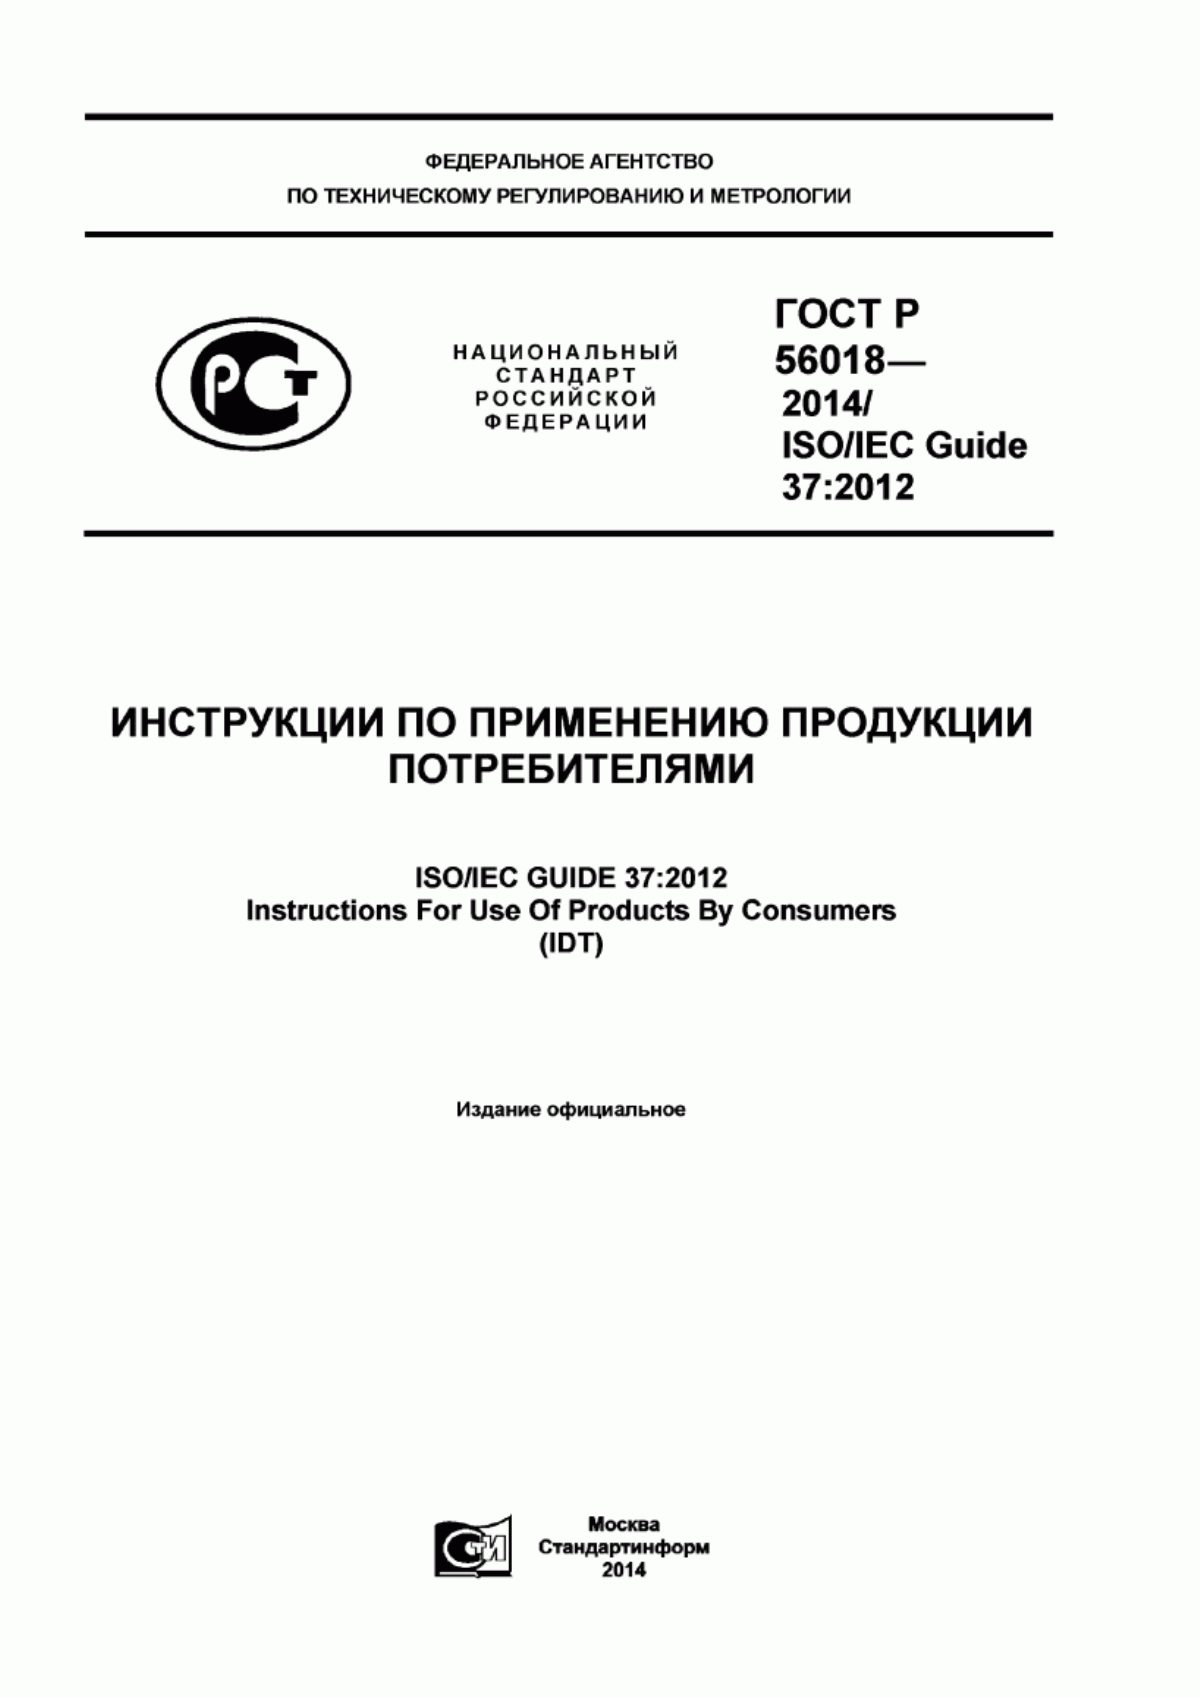 ГОСТ Р 56018-2014 Инструкции по применению потребительской продукции